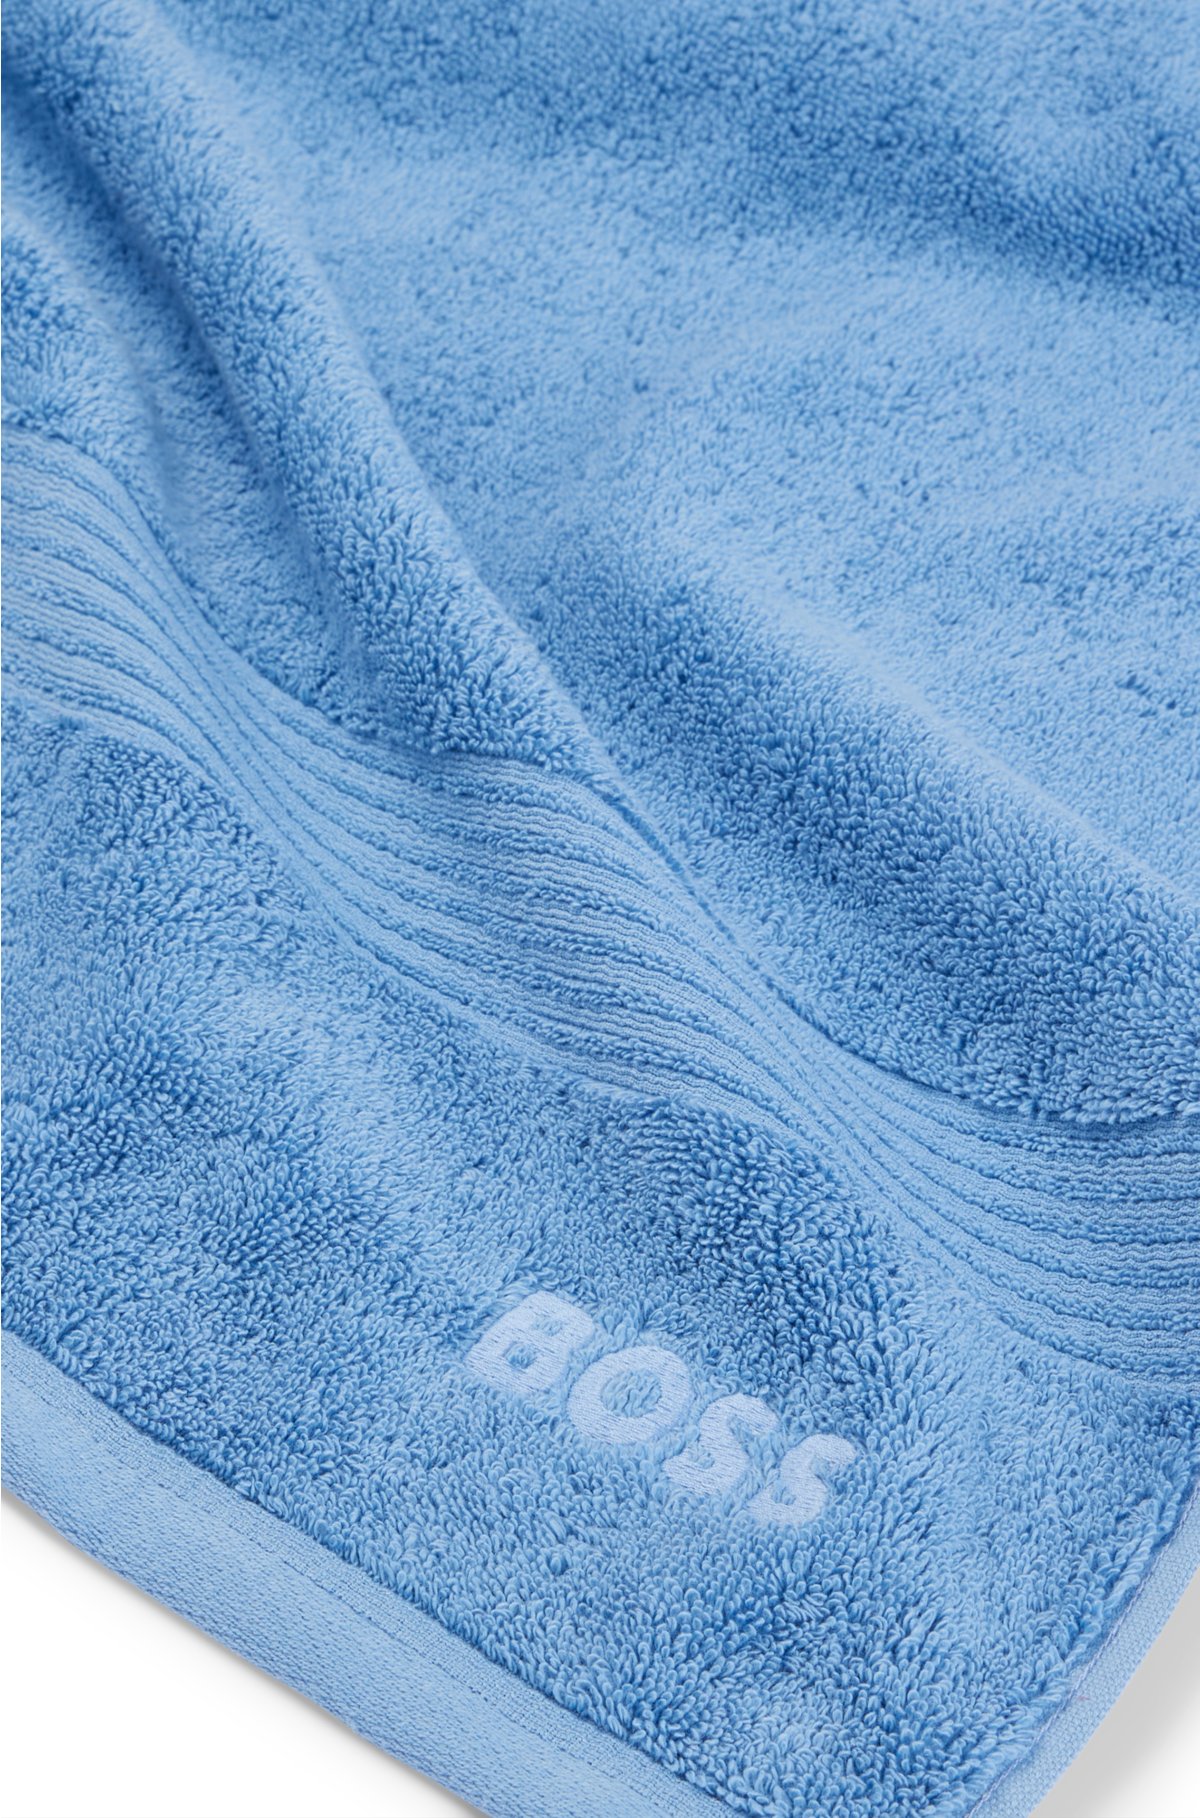 È meglio l'asciugamano in cotone o in microfibra? - Asciugamani da bagno